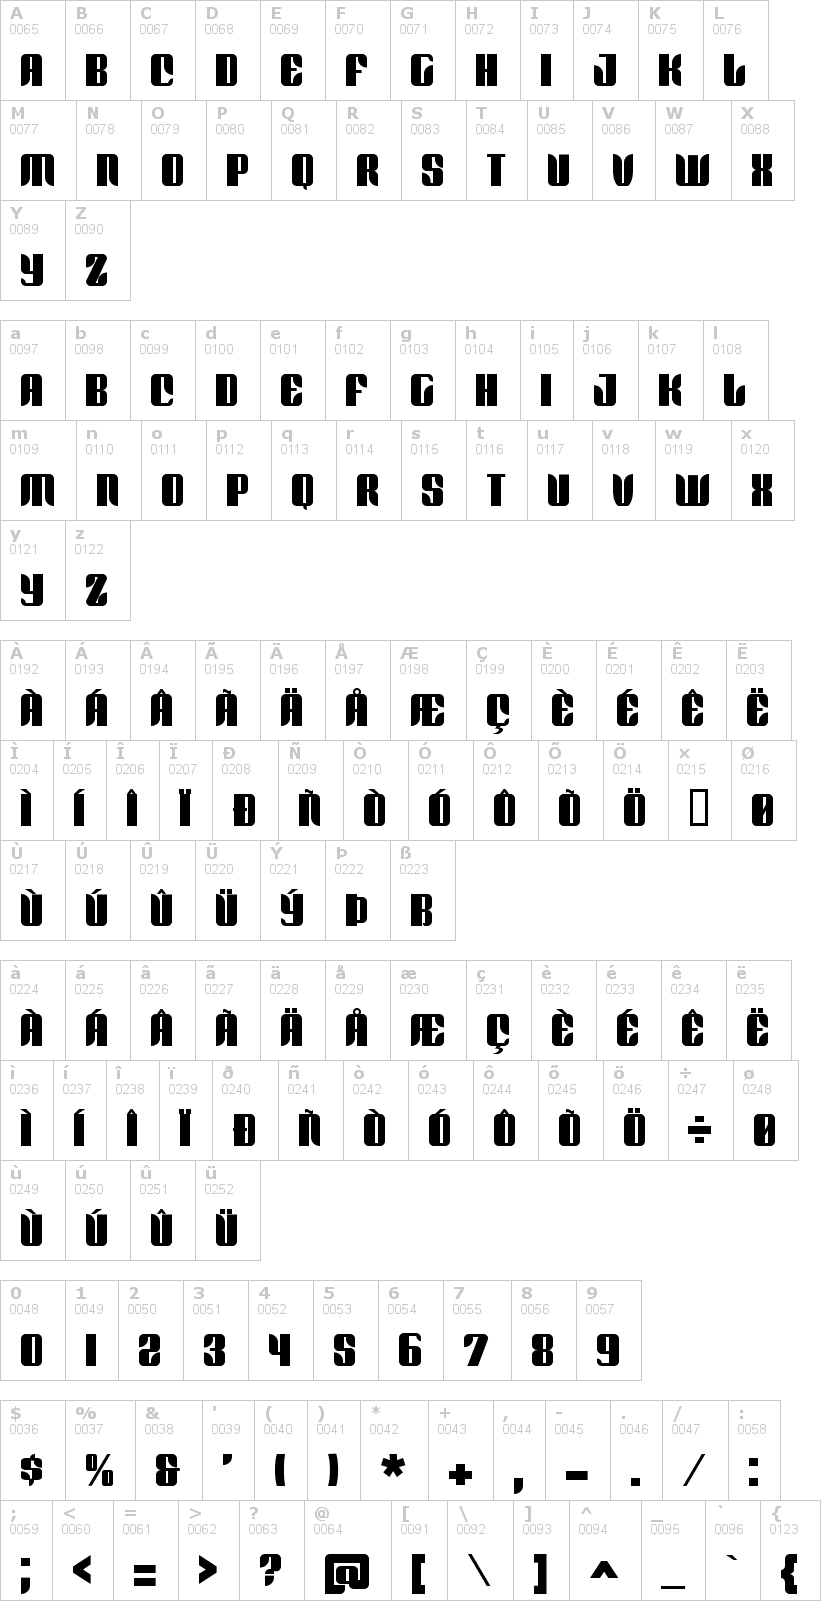 Lettere dell'alfabeto del font redford-bv con le quali è possibile realizzare adesivi prespaziati